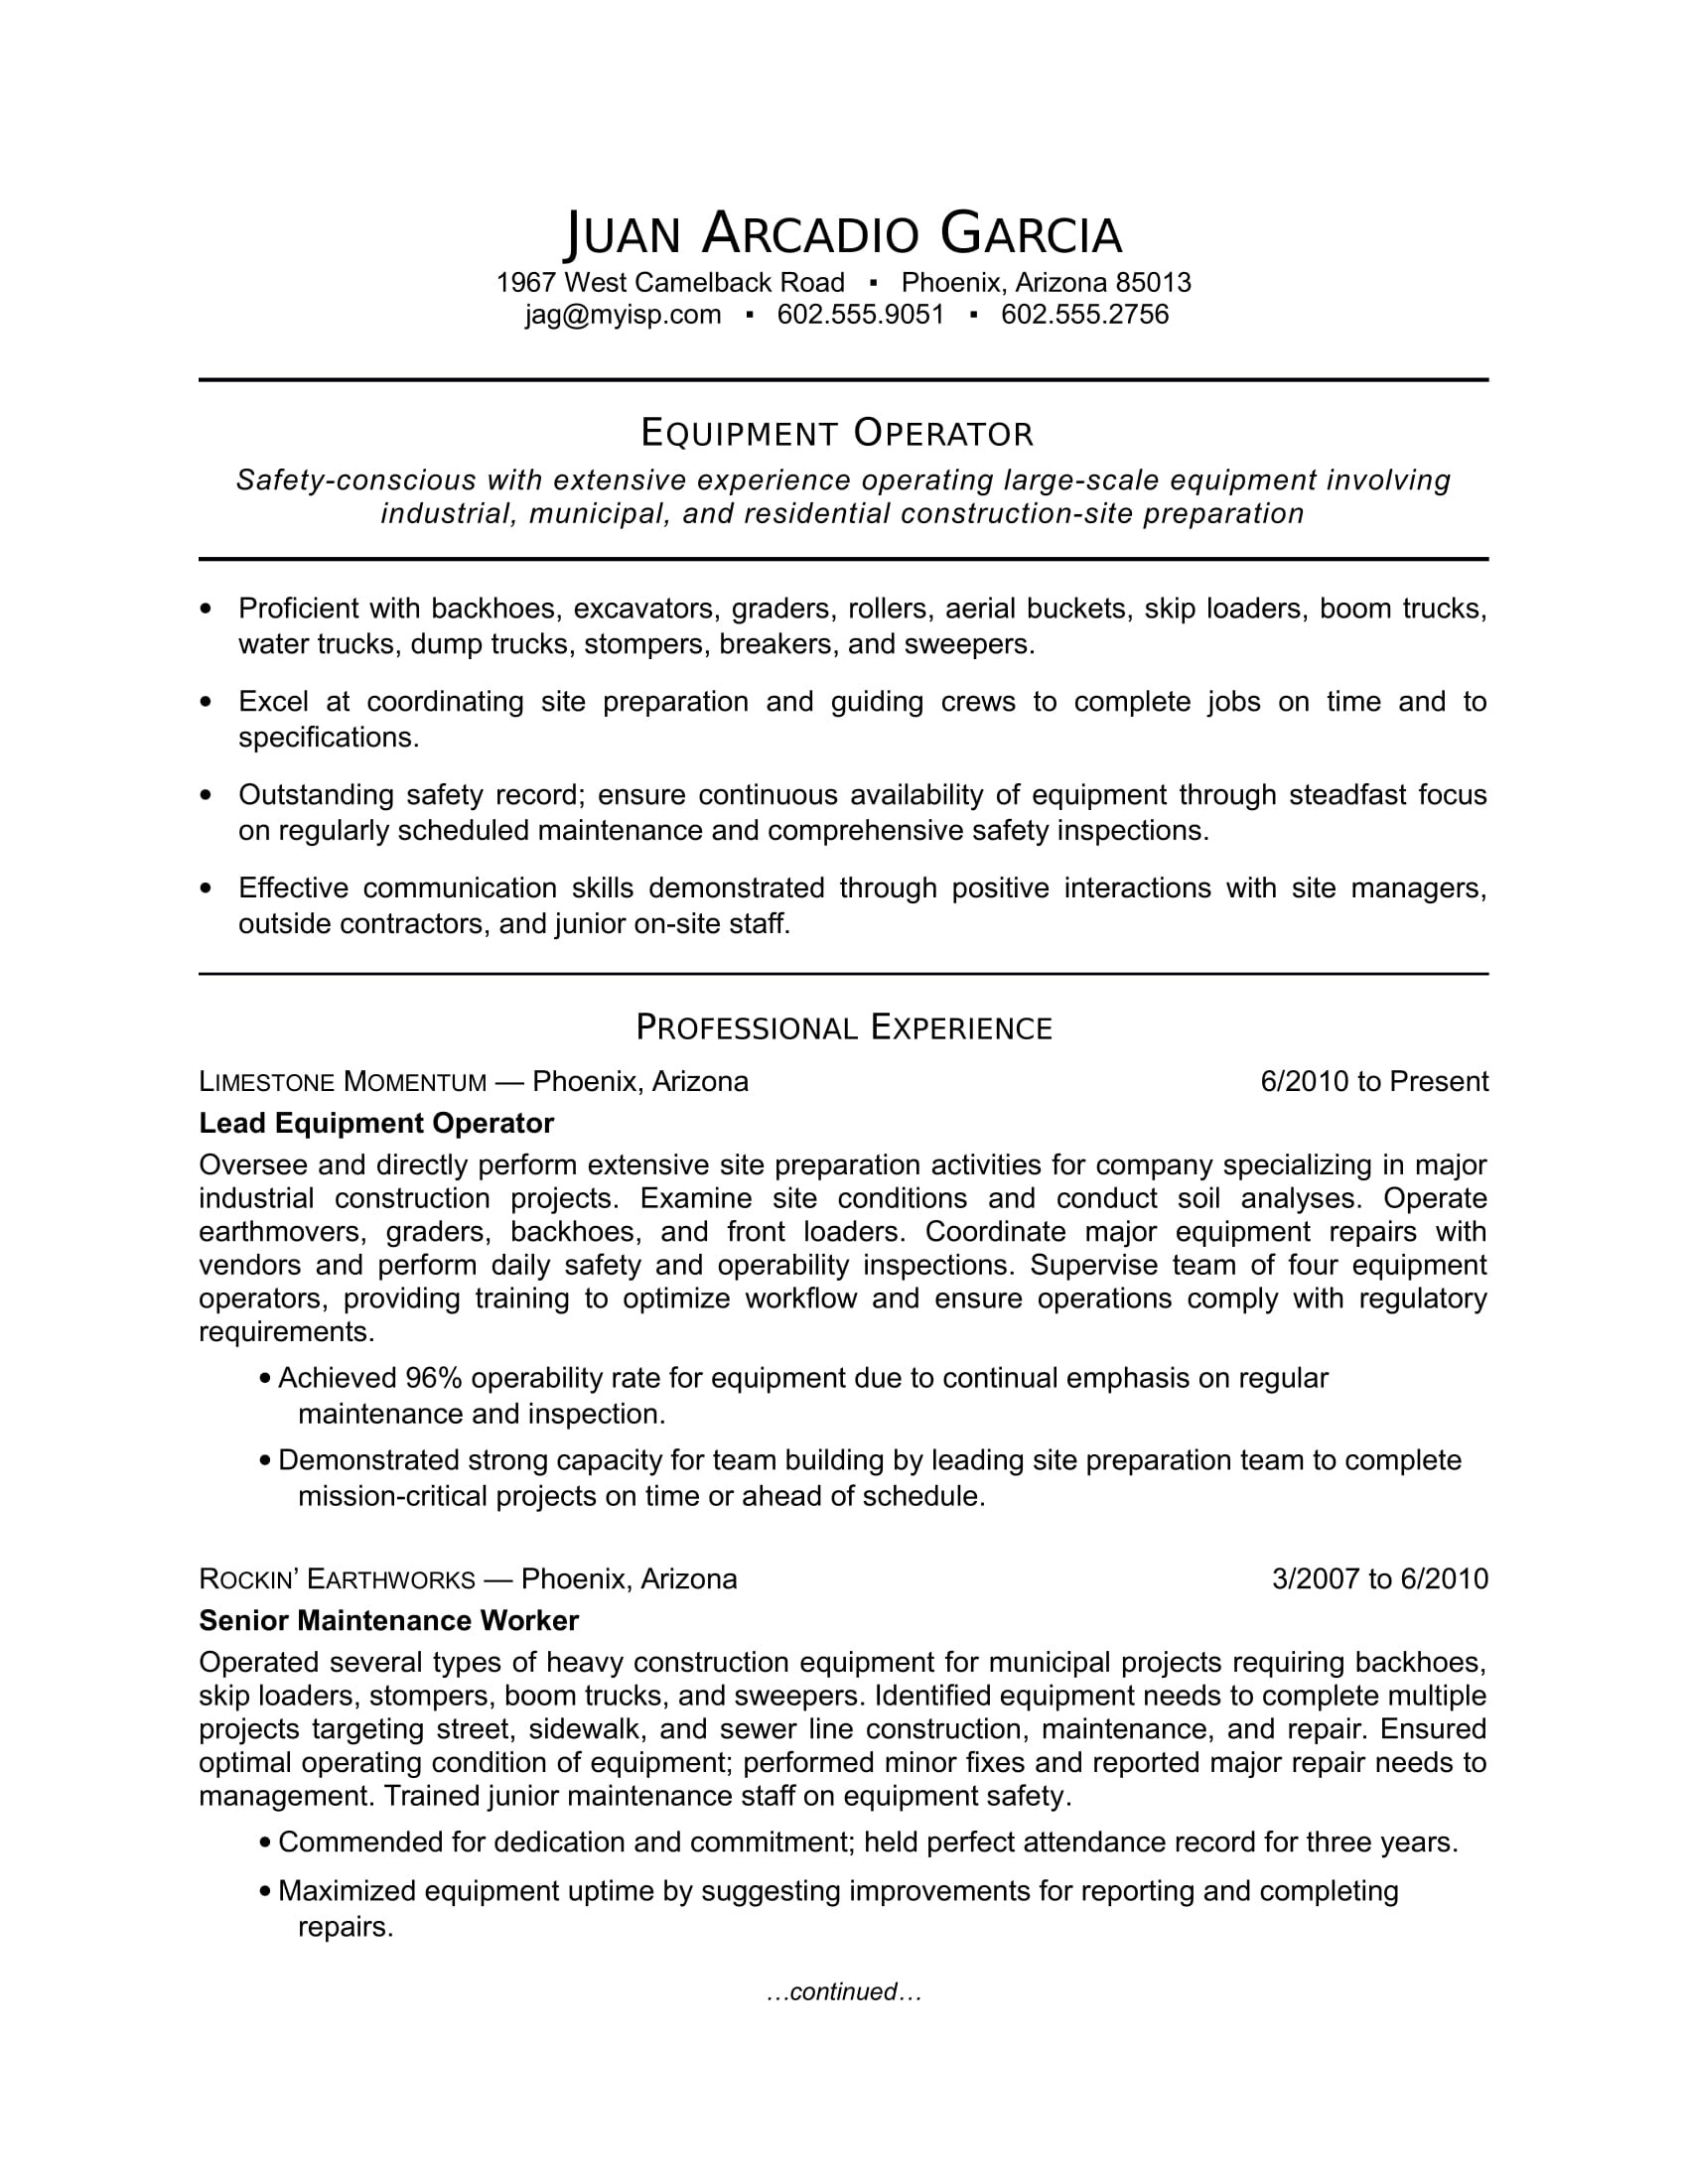 Sample Resume for Oil Field Worker Equipment Operator Resume Sample Monster.com